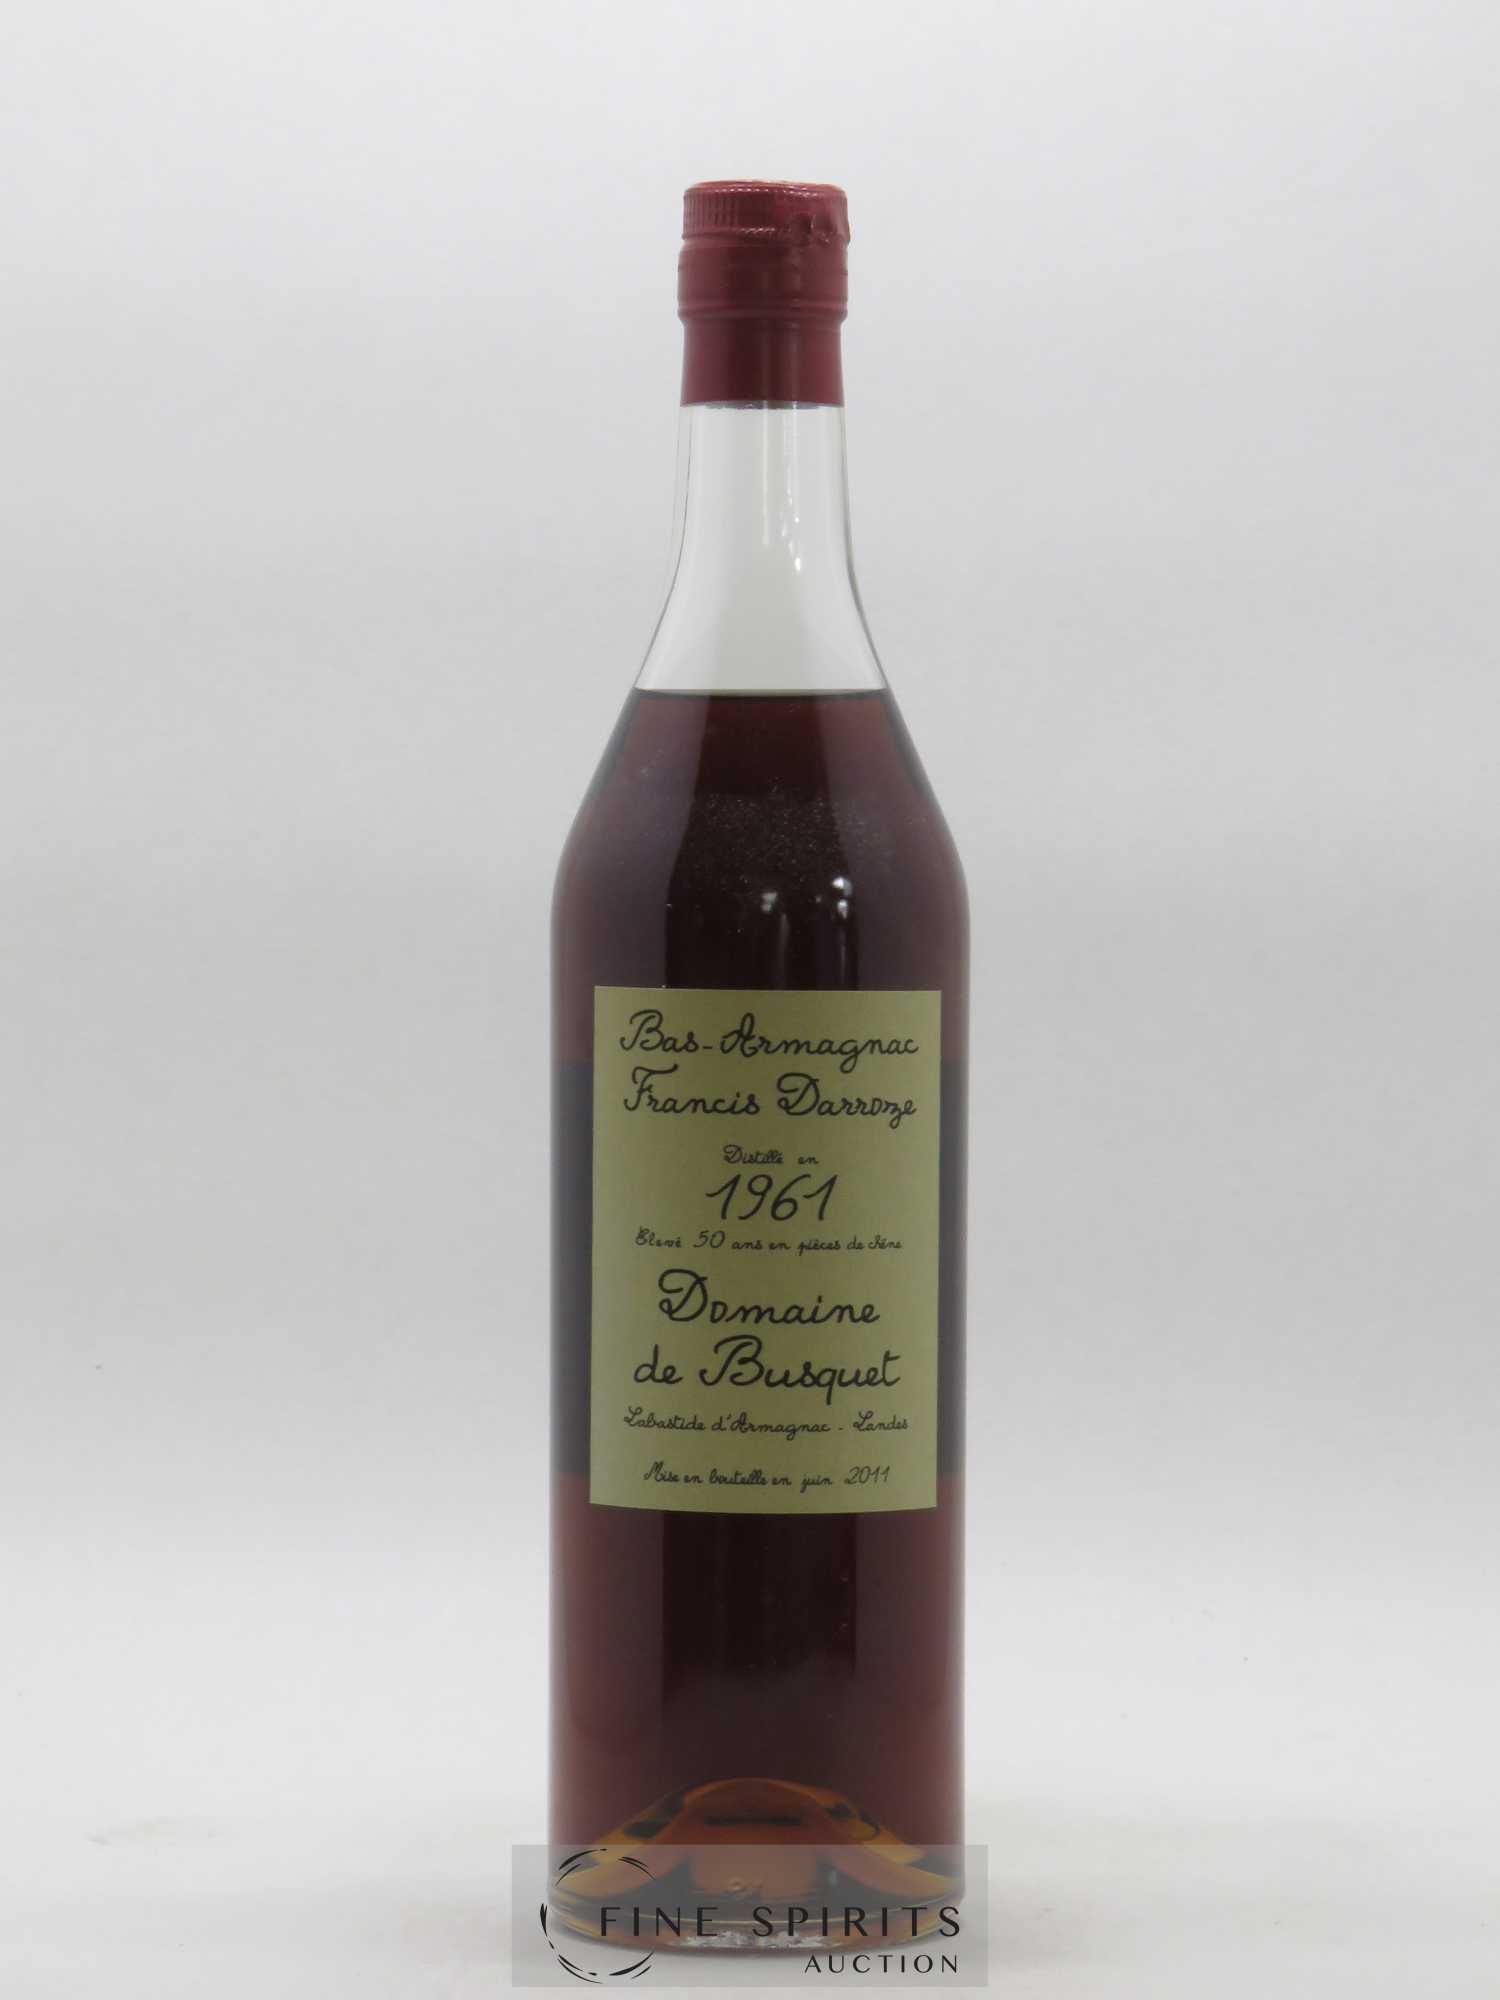 Francis Darroze 50 years 1961 Of. Domaine de Busquet mis en bouteille en 2011 Brut de Fût 